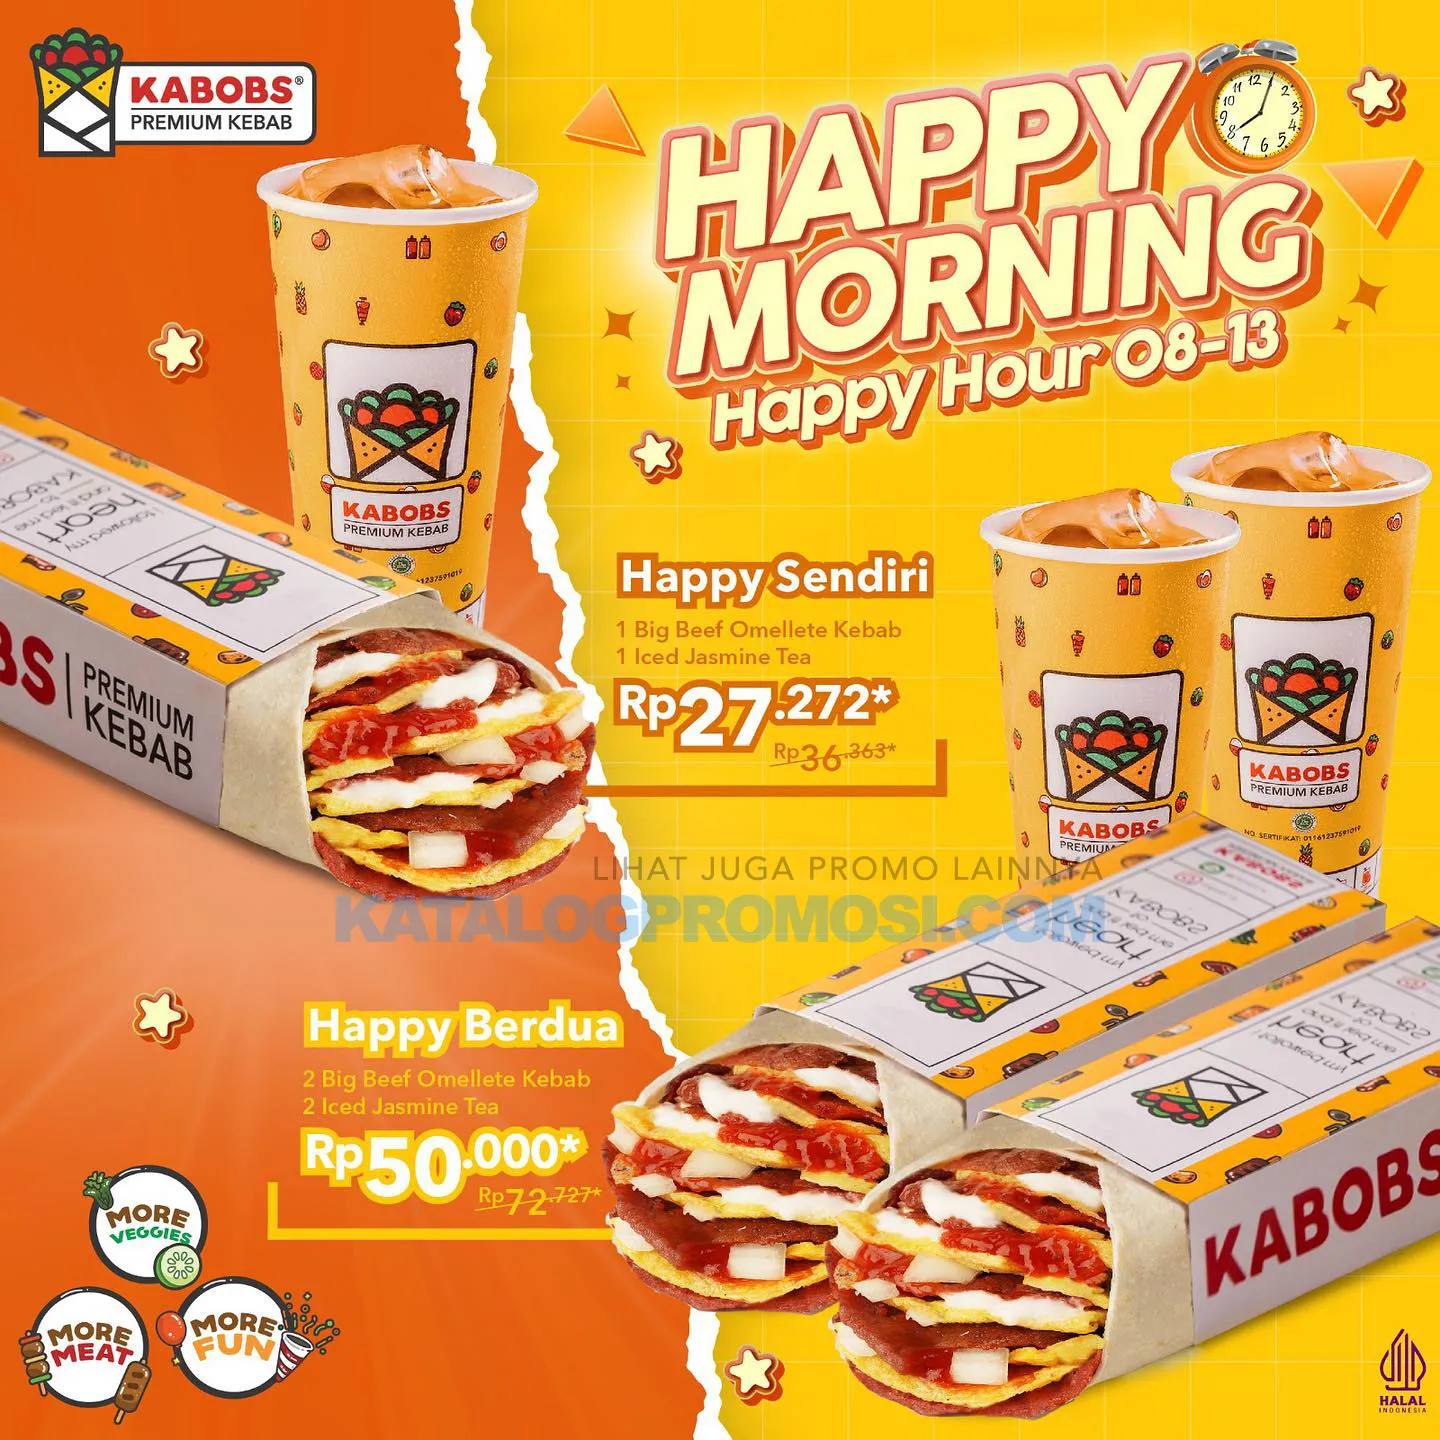 Promo KABOBS HAPPY MORNING - harga spesial paket HAPPY SENDIRI atau HAPPY BERDUA mulai dari Rp. 27.272*